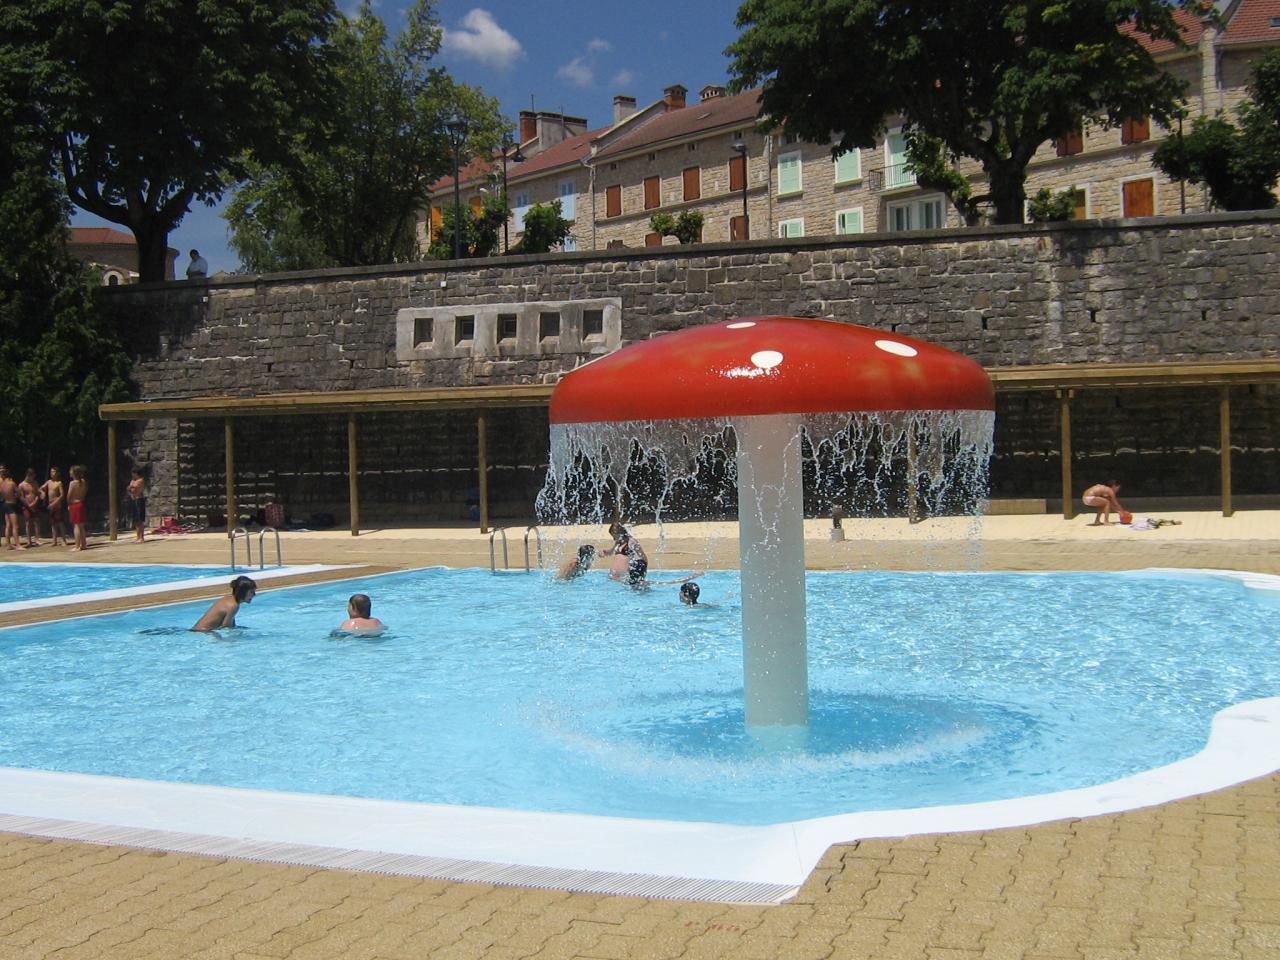 La piscine municipale